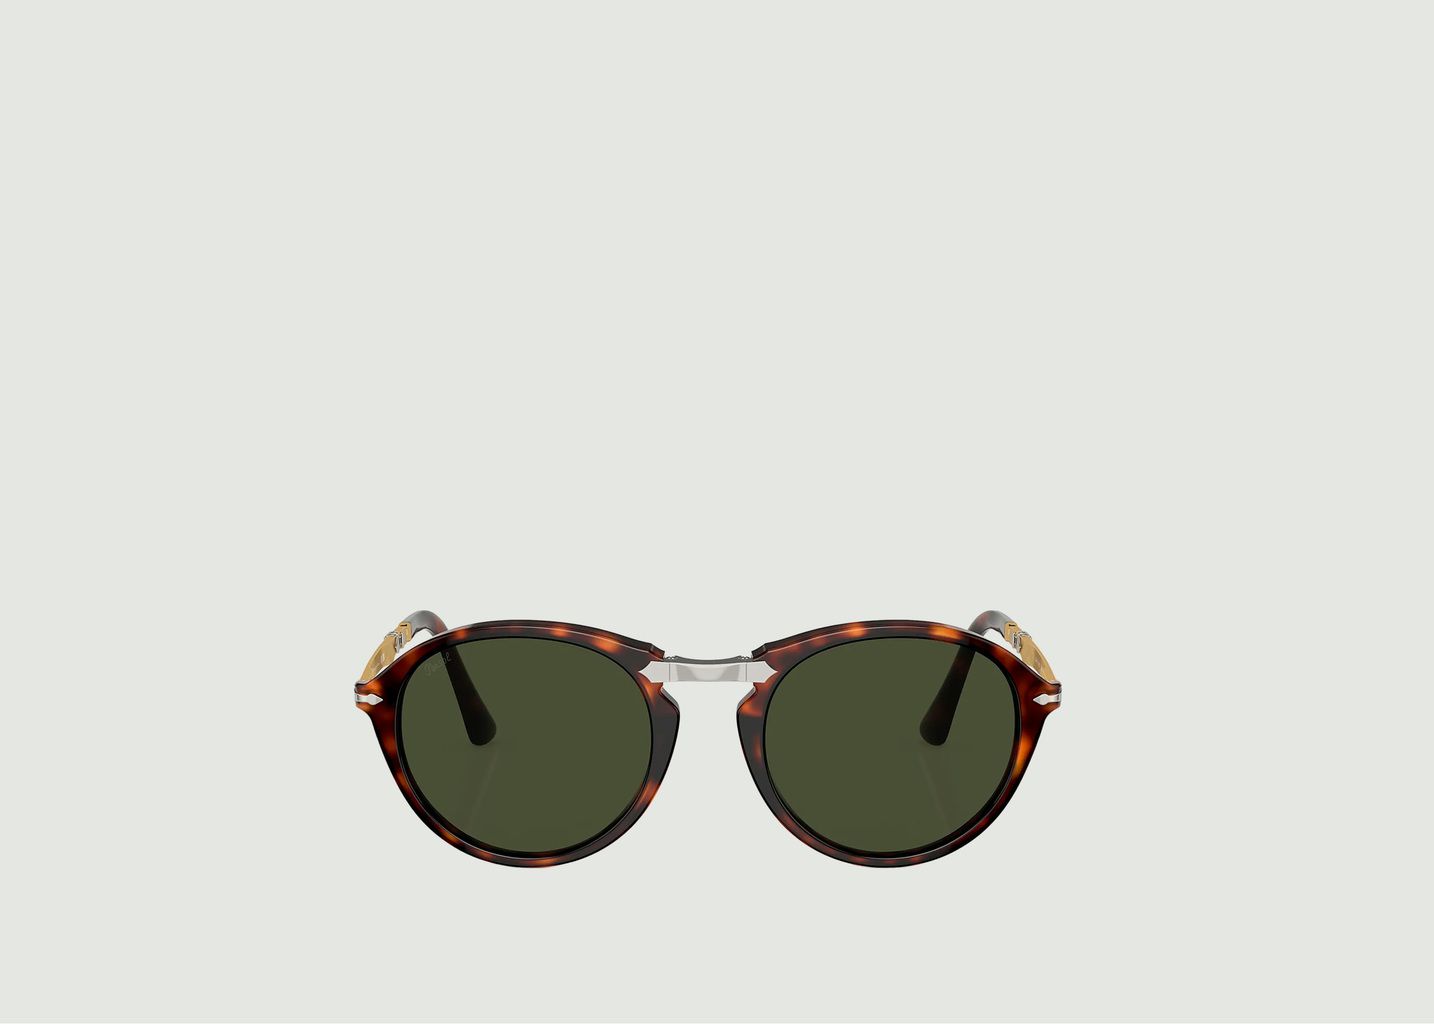 Foldable sunglasses PO3274S - Persol